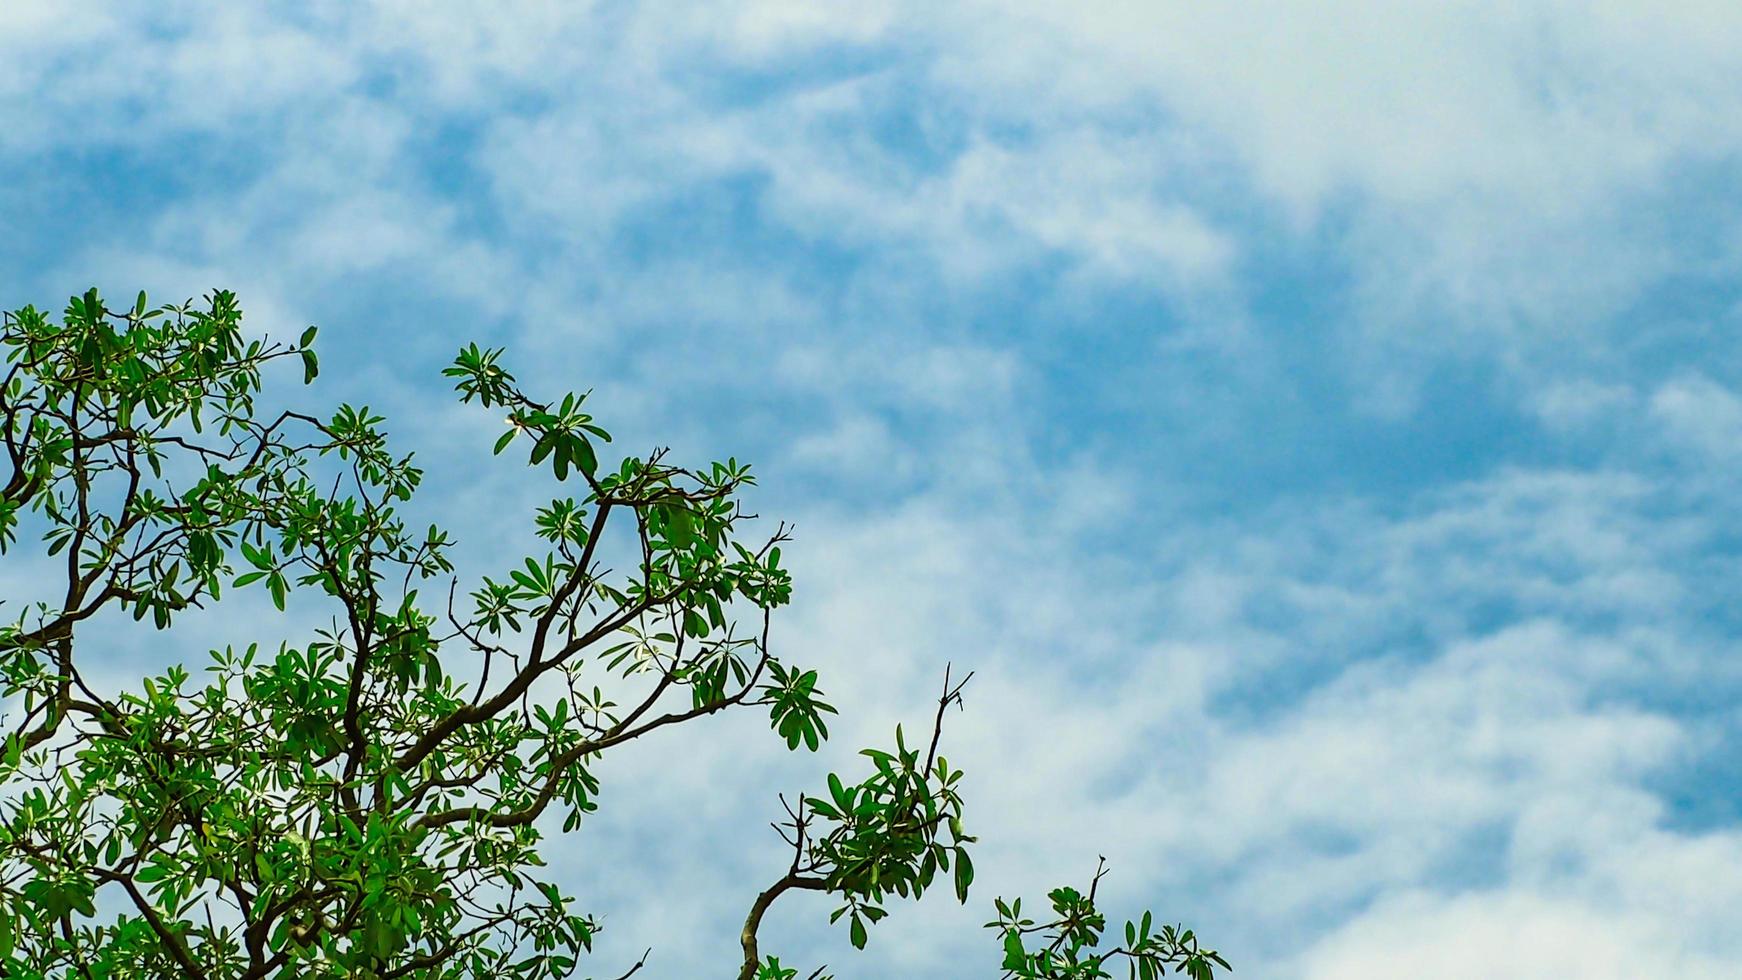 arbre avec branche et feuilles vertes isolées sur ciel bleu et nuages blancs le jour du soleil. photo